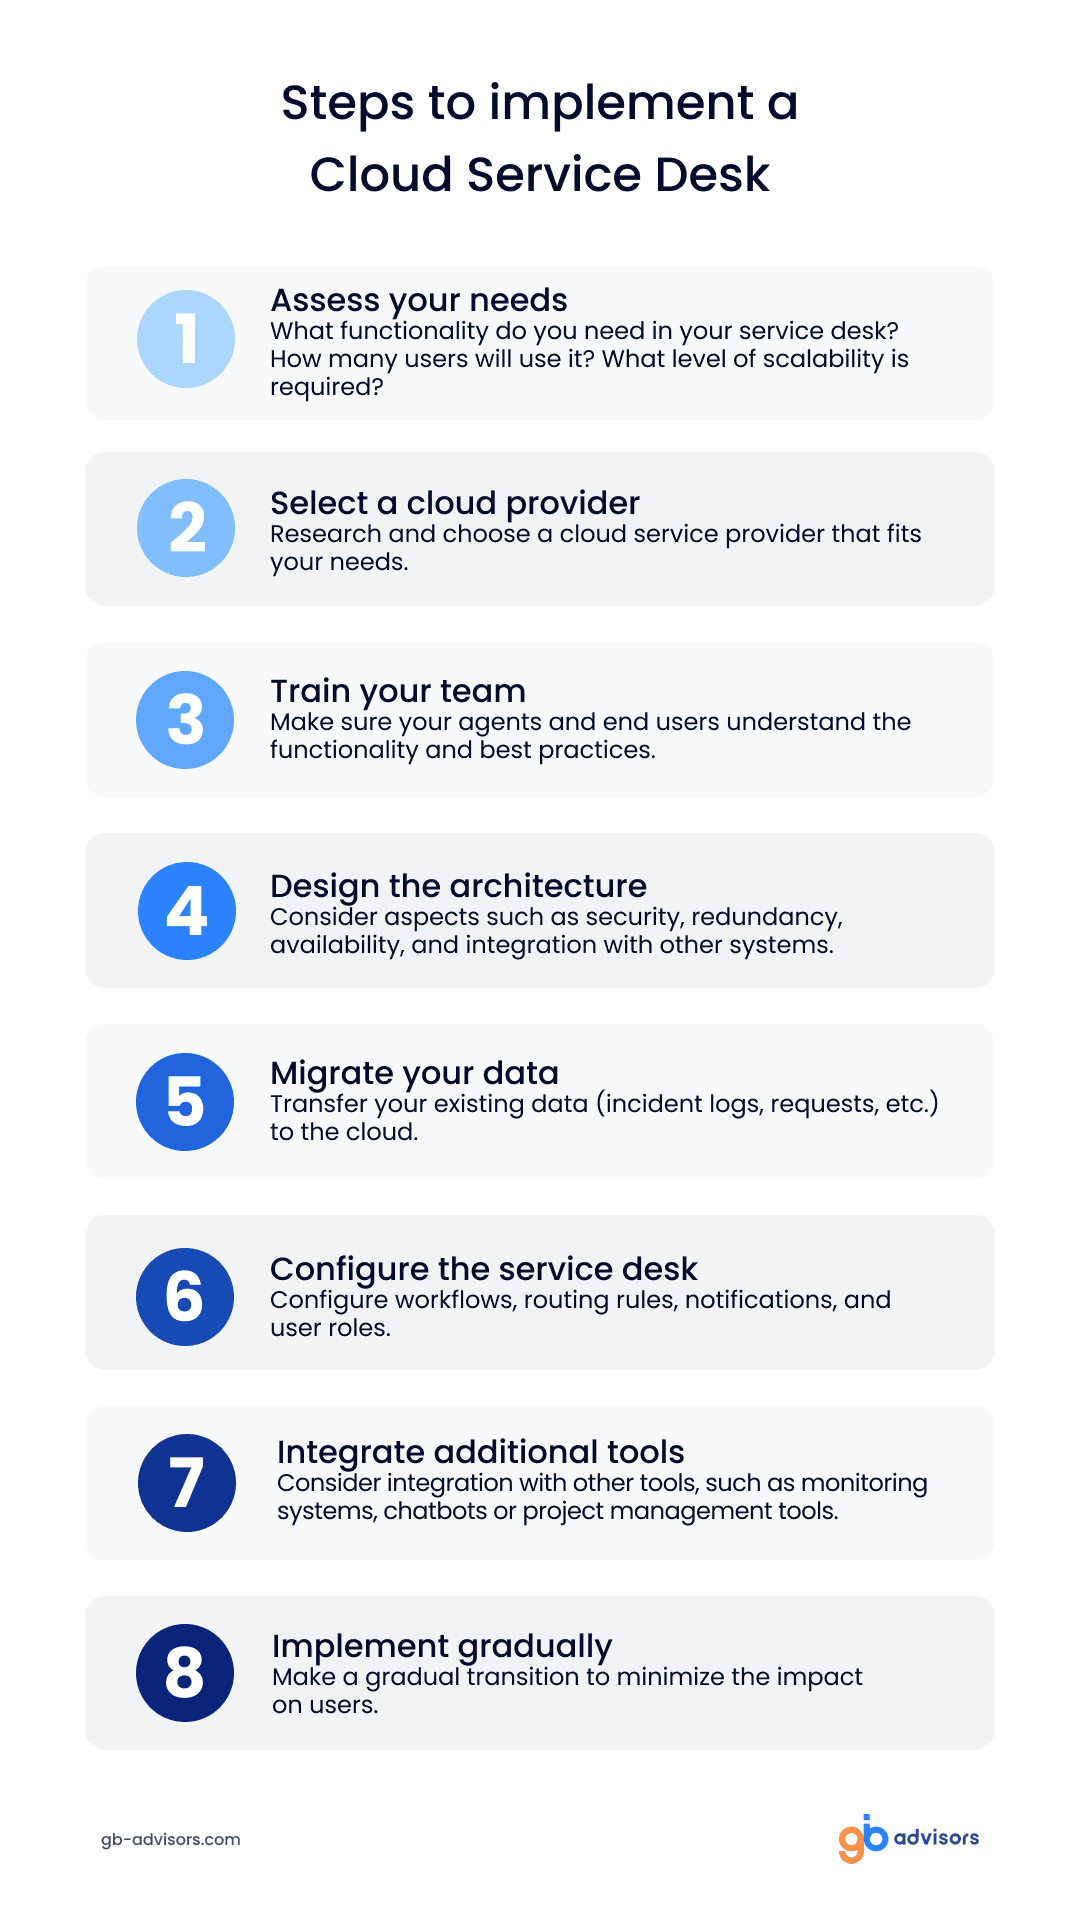 Steps to implement a cloud service desk